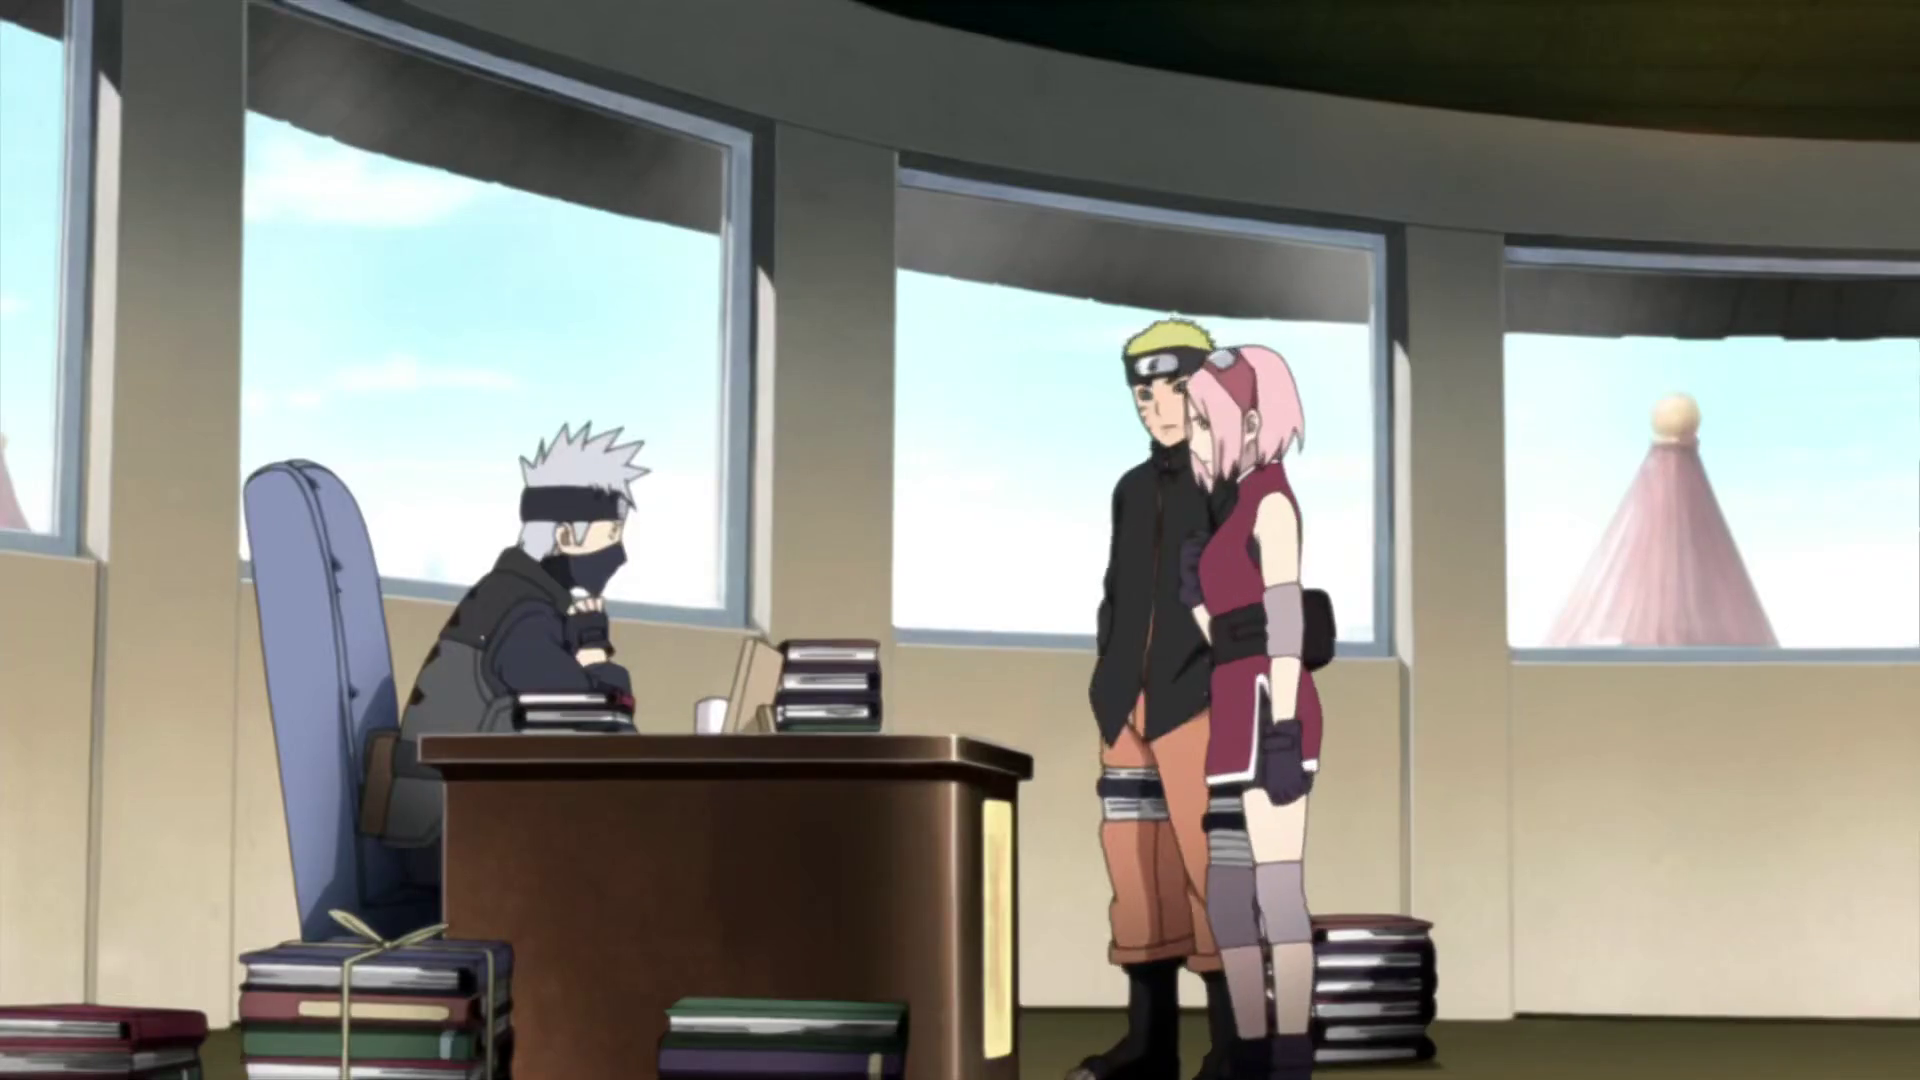 Naruto, anime, kakashi, naruto shippuden, sakura, sasuke, HD phone wallpaper